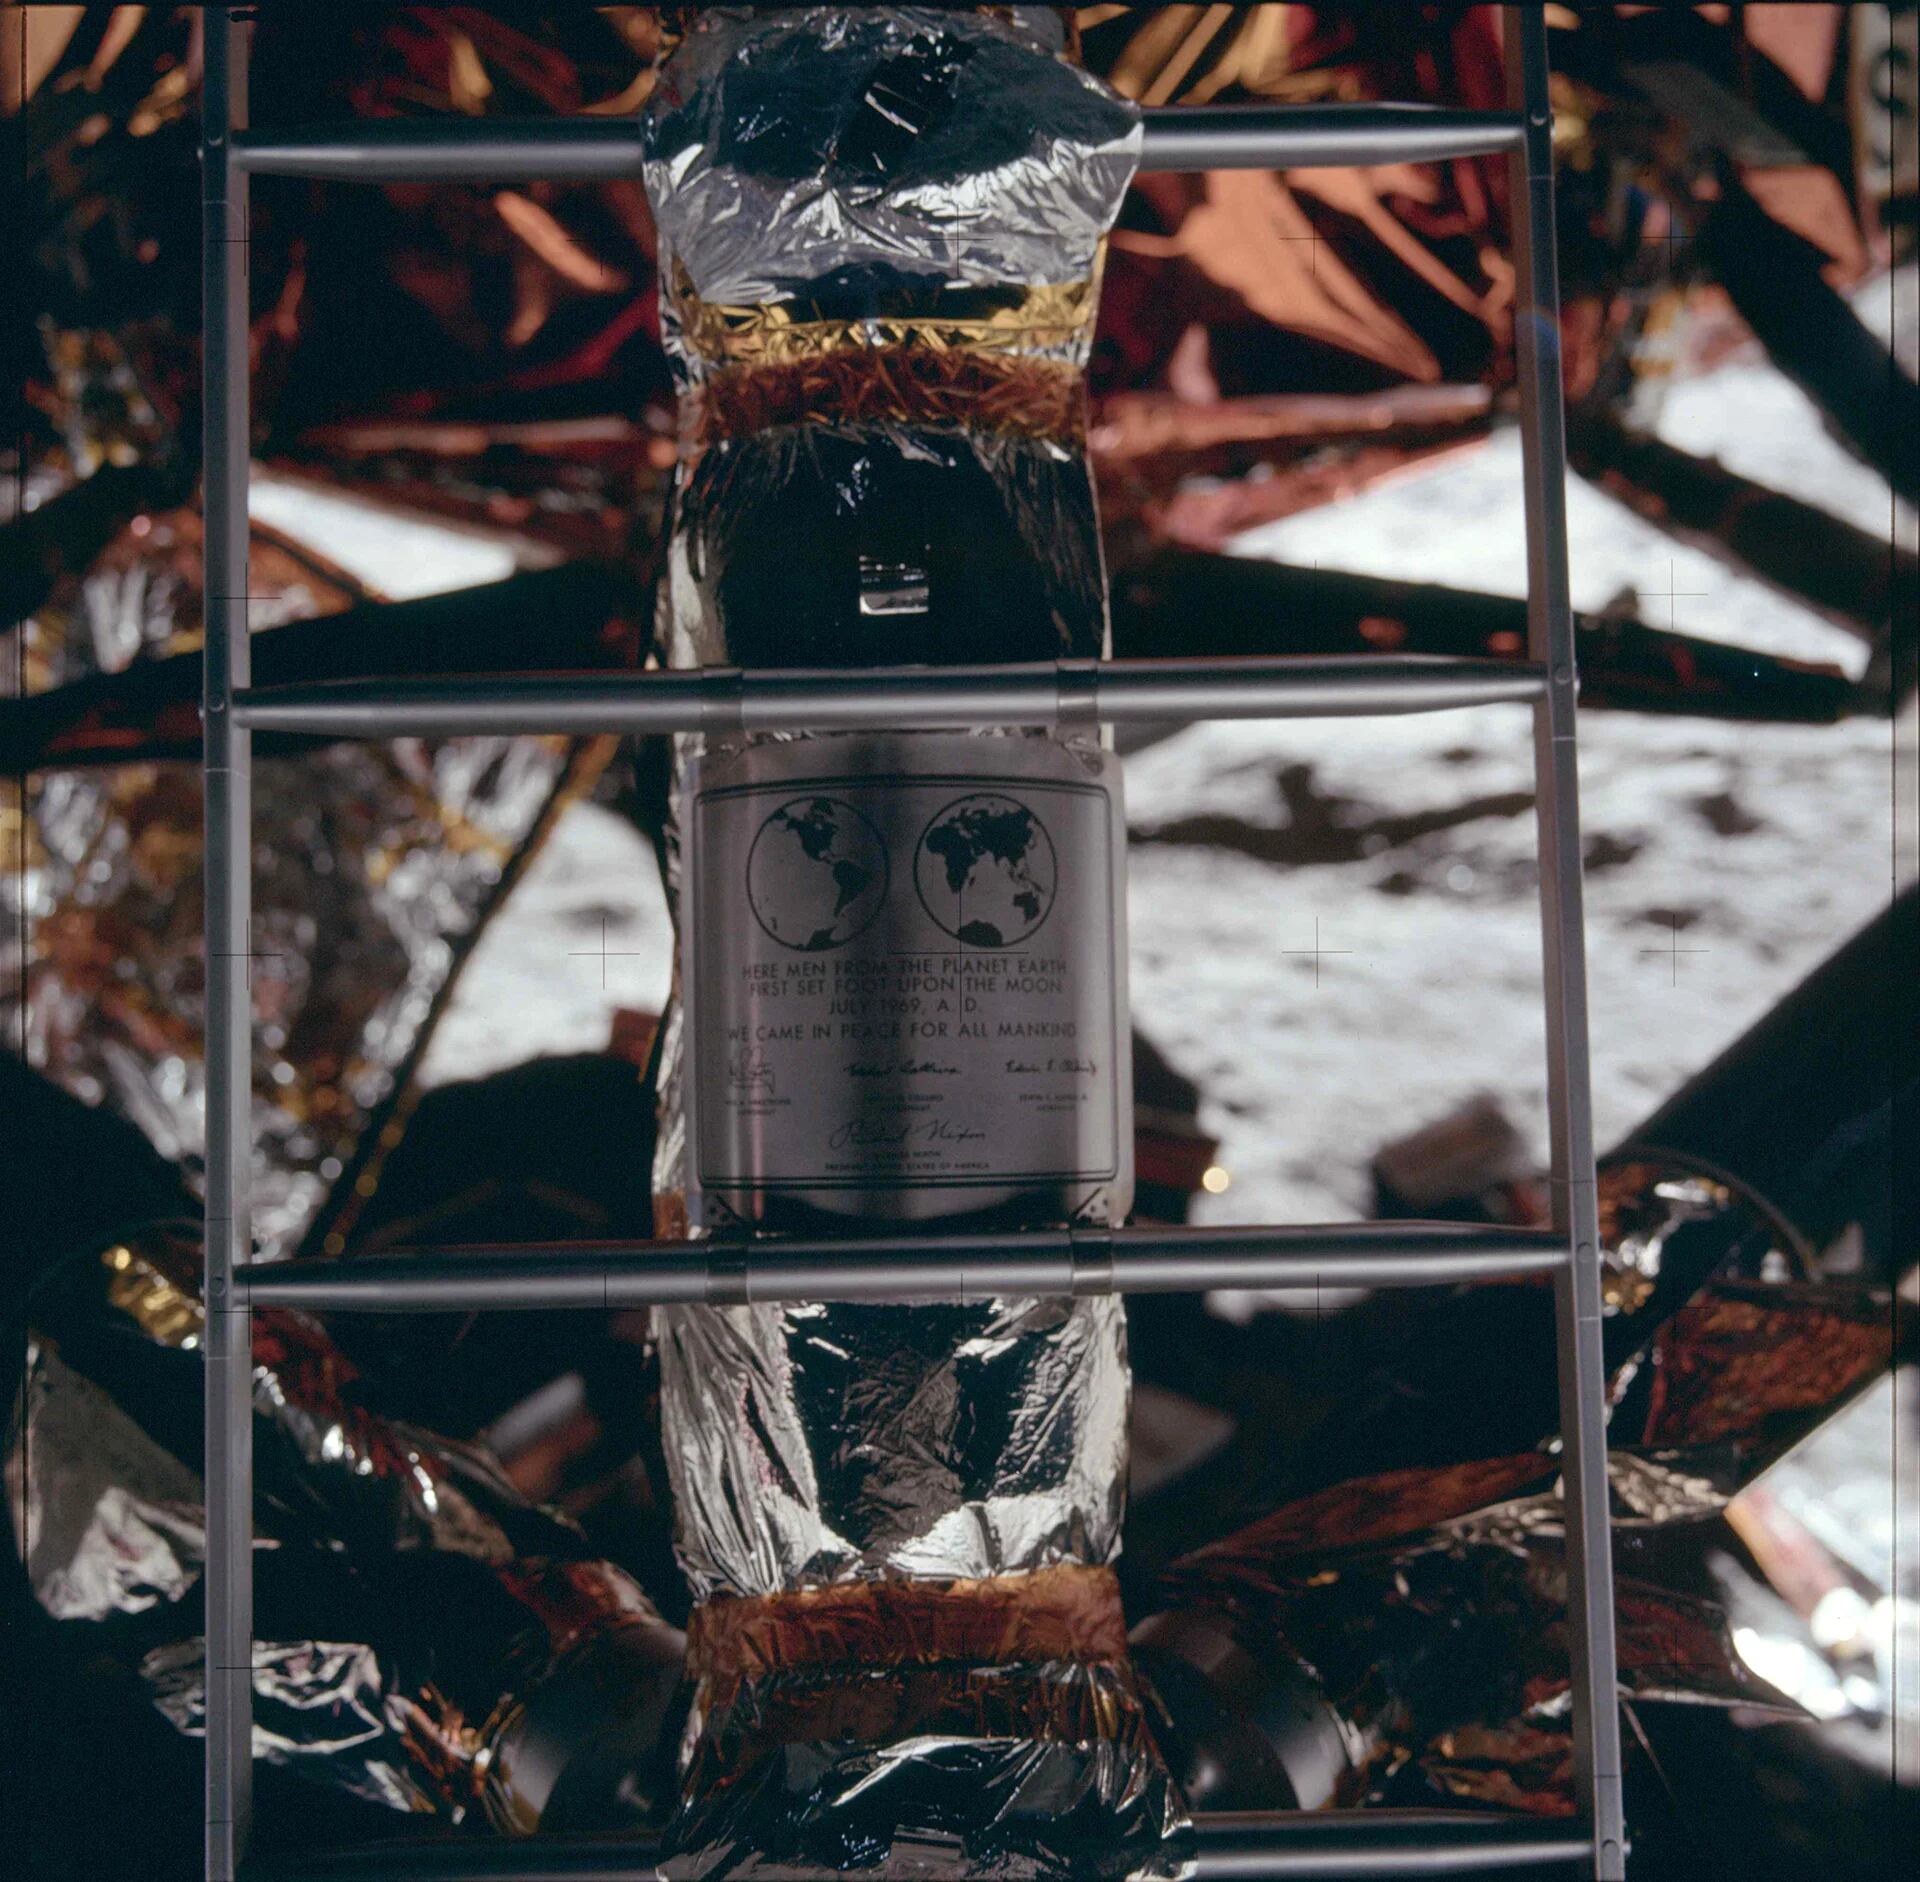 La placa que los astronautas del Apolo 11 dejaron en la luna: “Aquí hombres del planeta Tierra pisaron por primera vez la luna en julio de 1969. Vinimos en son de paz representando a la humanidad. Neil A. Armstrong -. Michael Collins -. Edwin Aldrin Jr. E ” (Reuters)